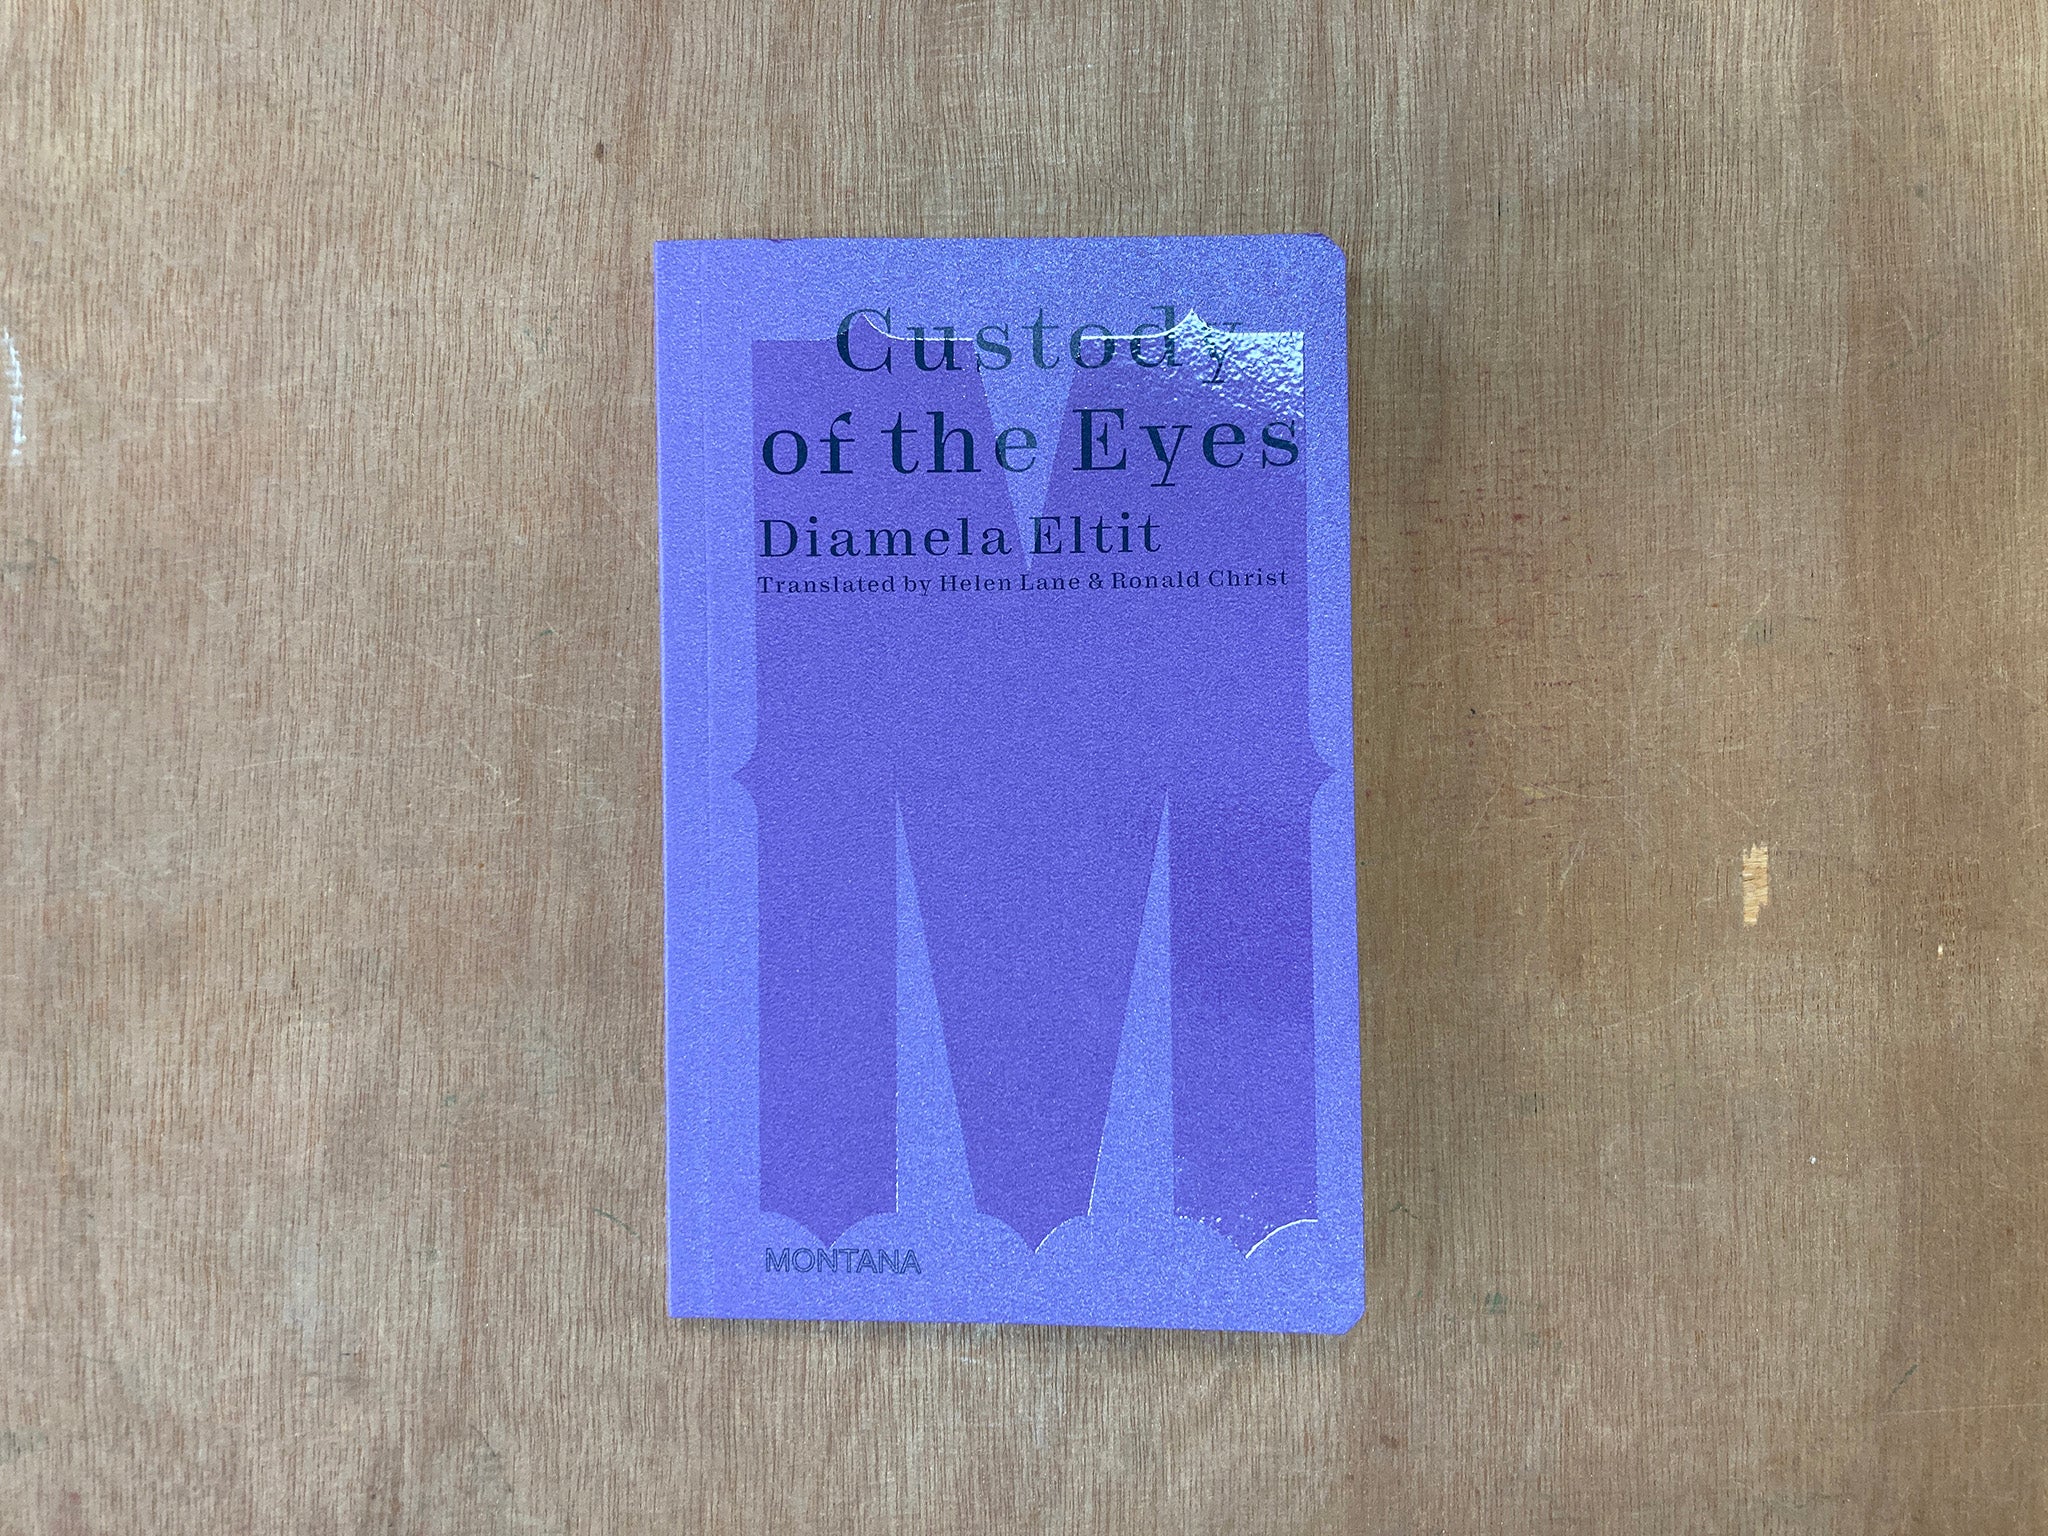 CUSTODY OF THE EYES by Diamela Eltit